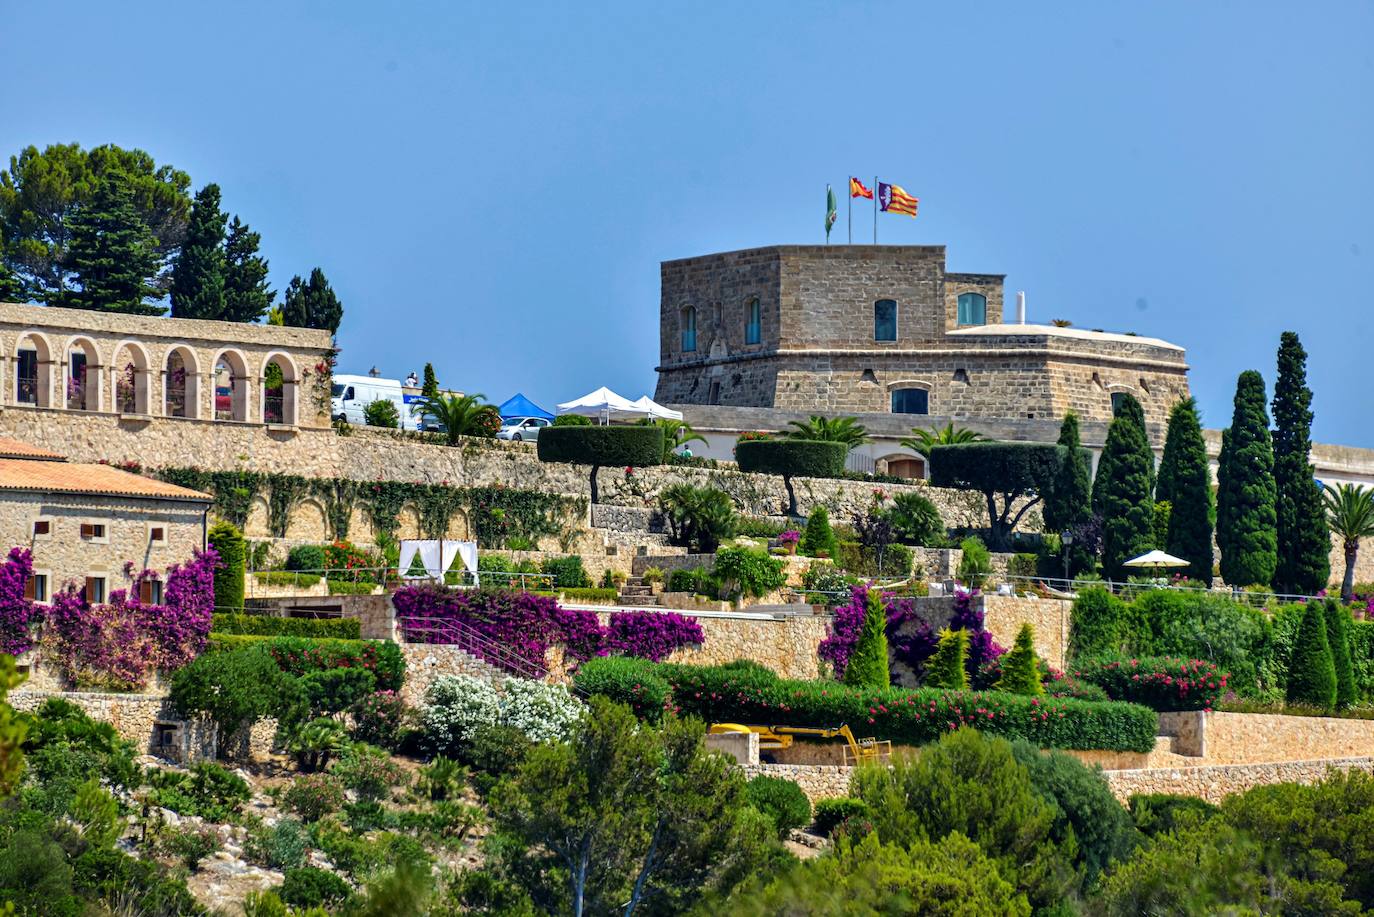 El lugar de la boda: Sa Fortalesa, un castillo del S.XVII 